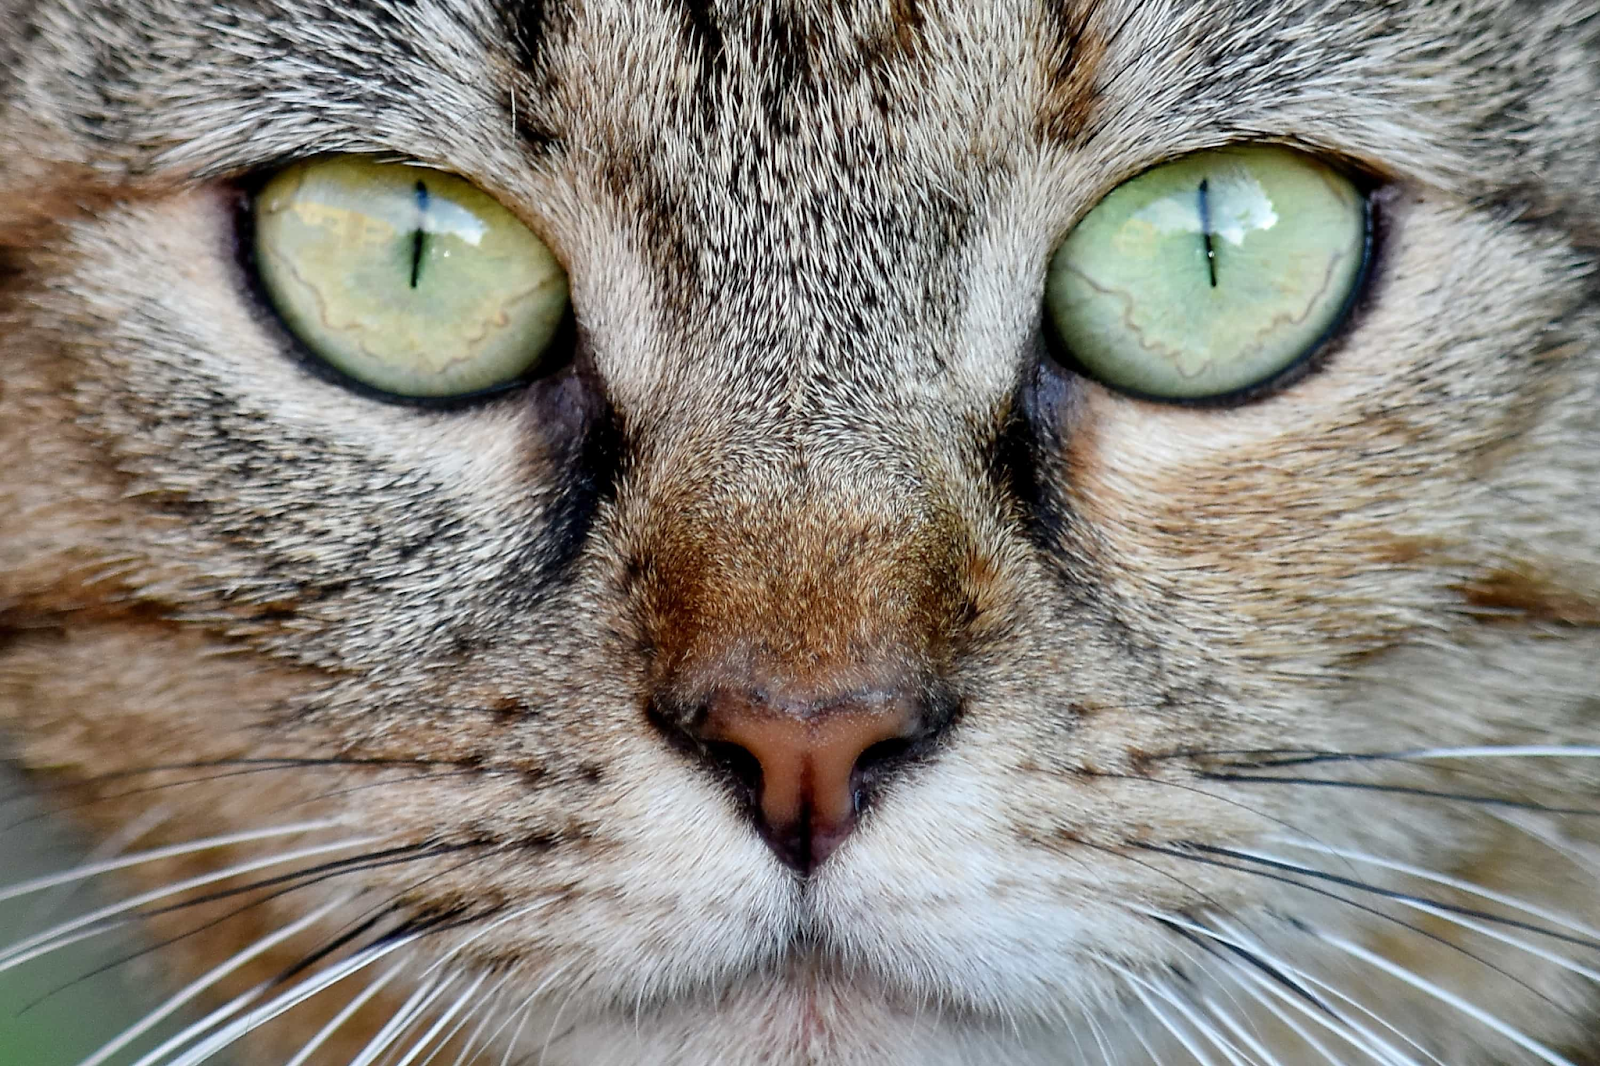 2.รู้หรือไม่ว่าแมวมีสายตาที่เฉียบคมตอนกลางคืน แต่แพ้กลางวัน